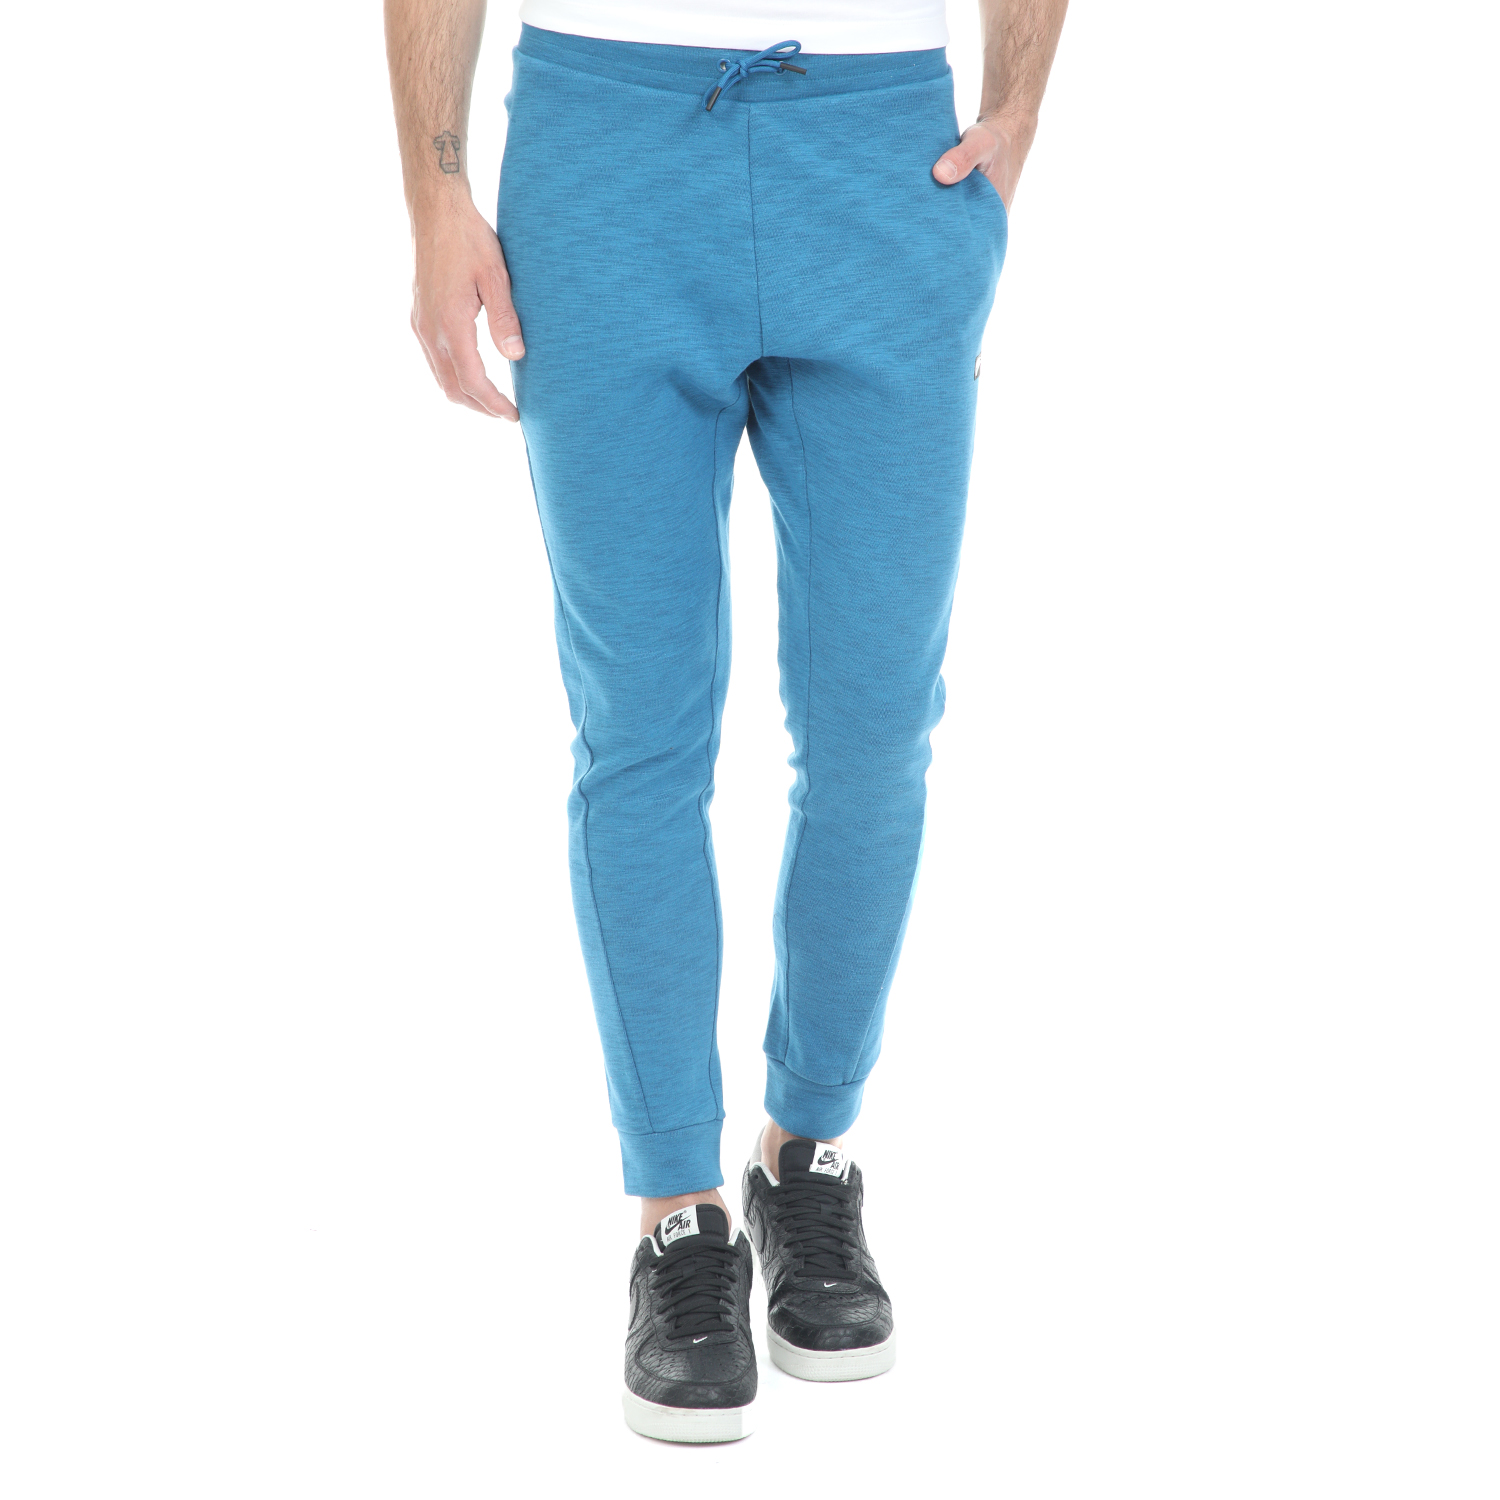 Ανδρικά/Ρούχα/Αθλητικά/Φόρμες NIKE - Ανδρικό παντελόνι φόρμας NIKE NSW OPTIC JGGR μπλε